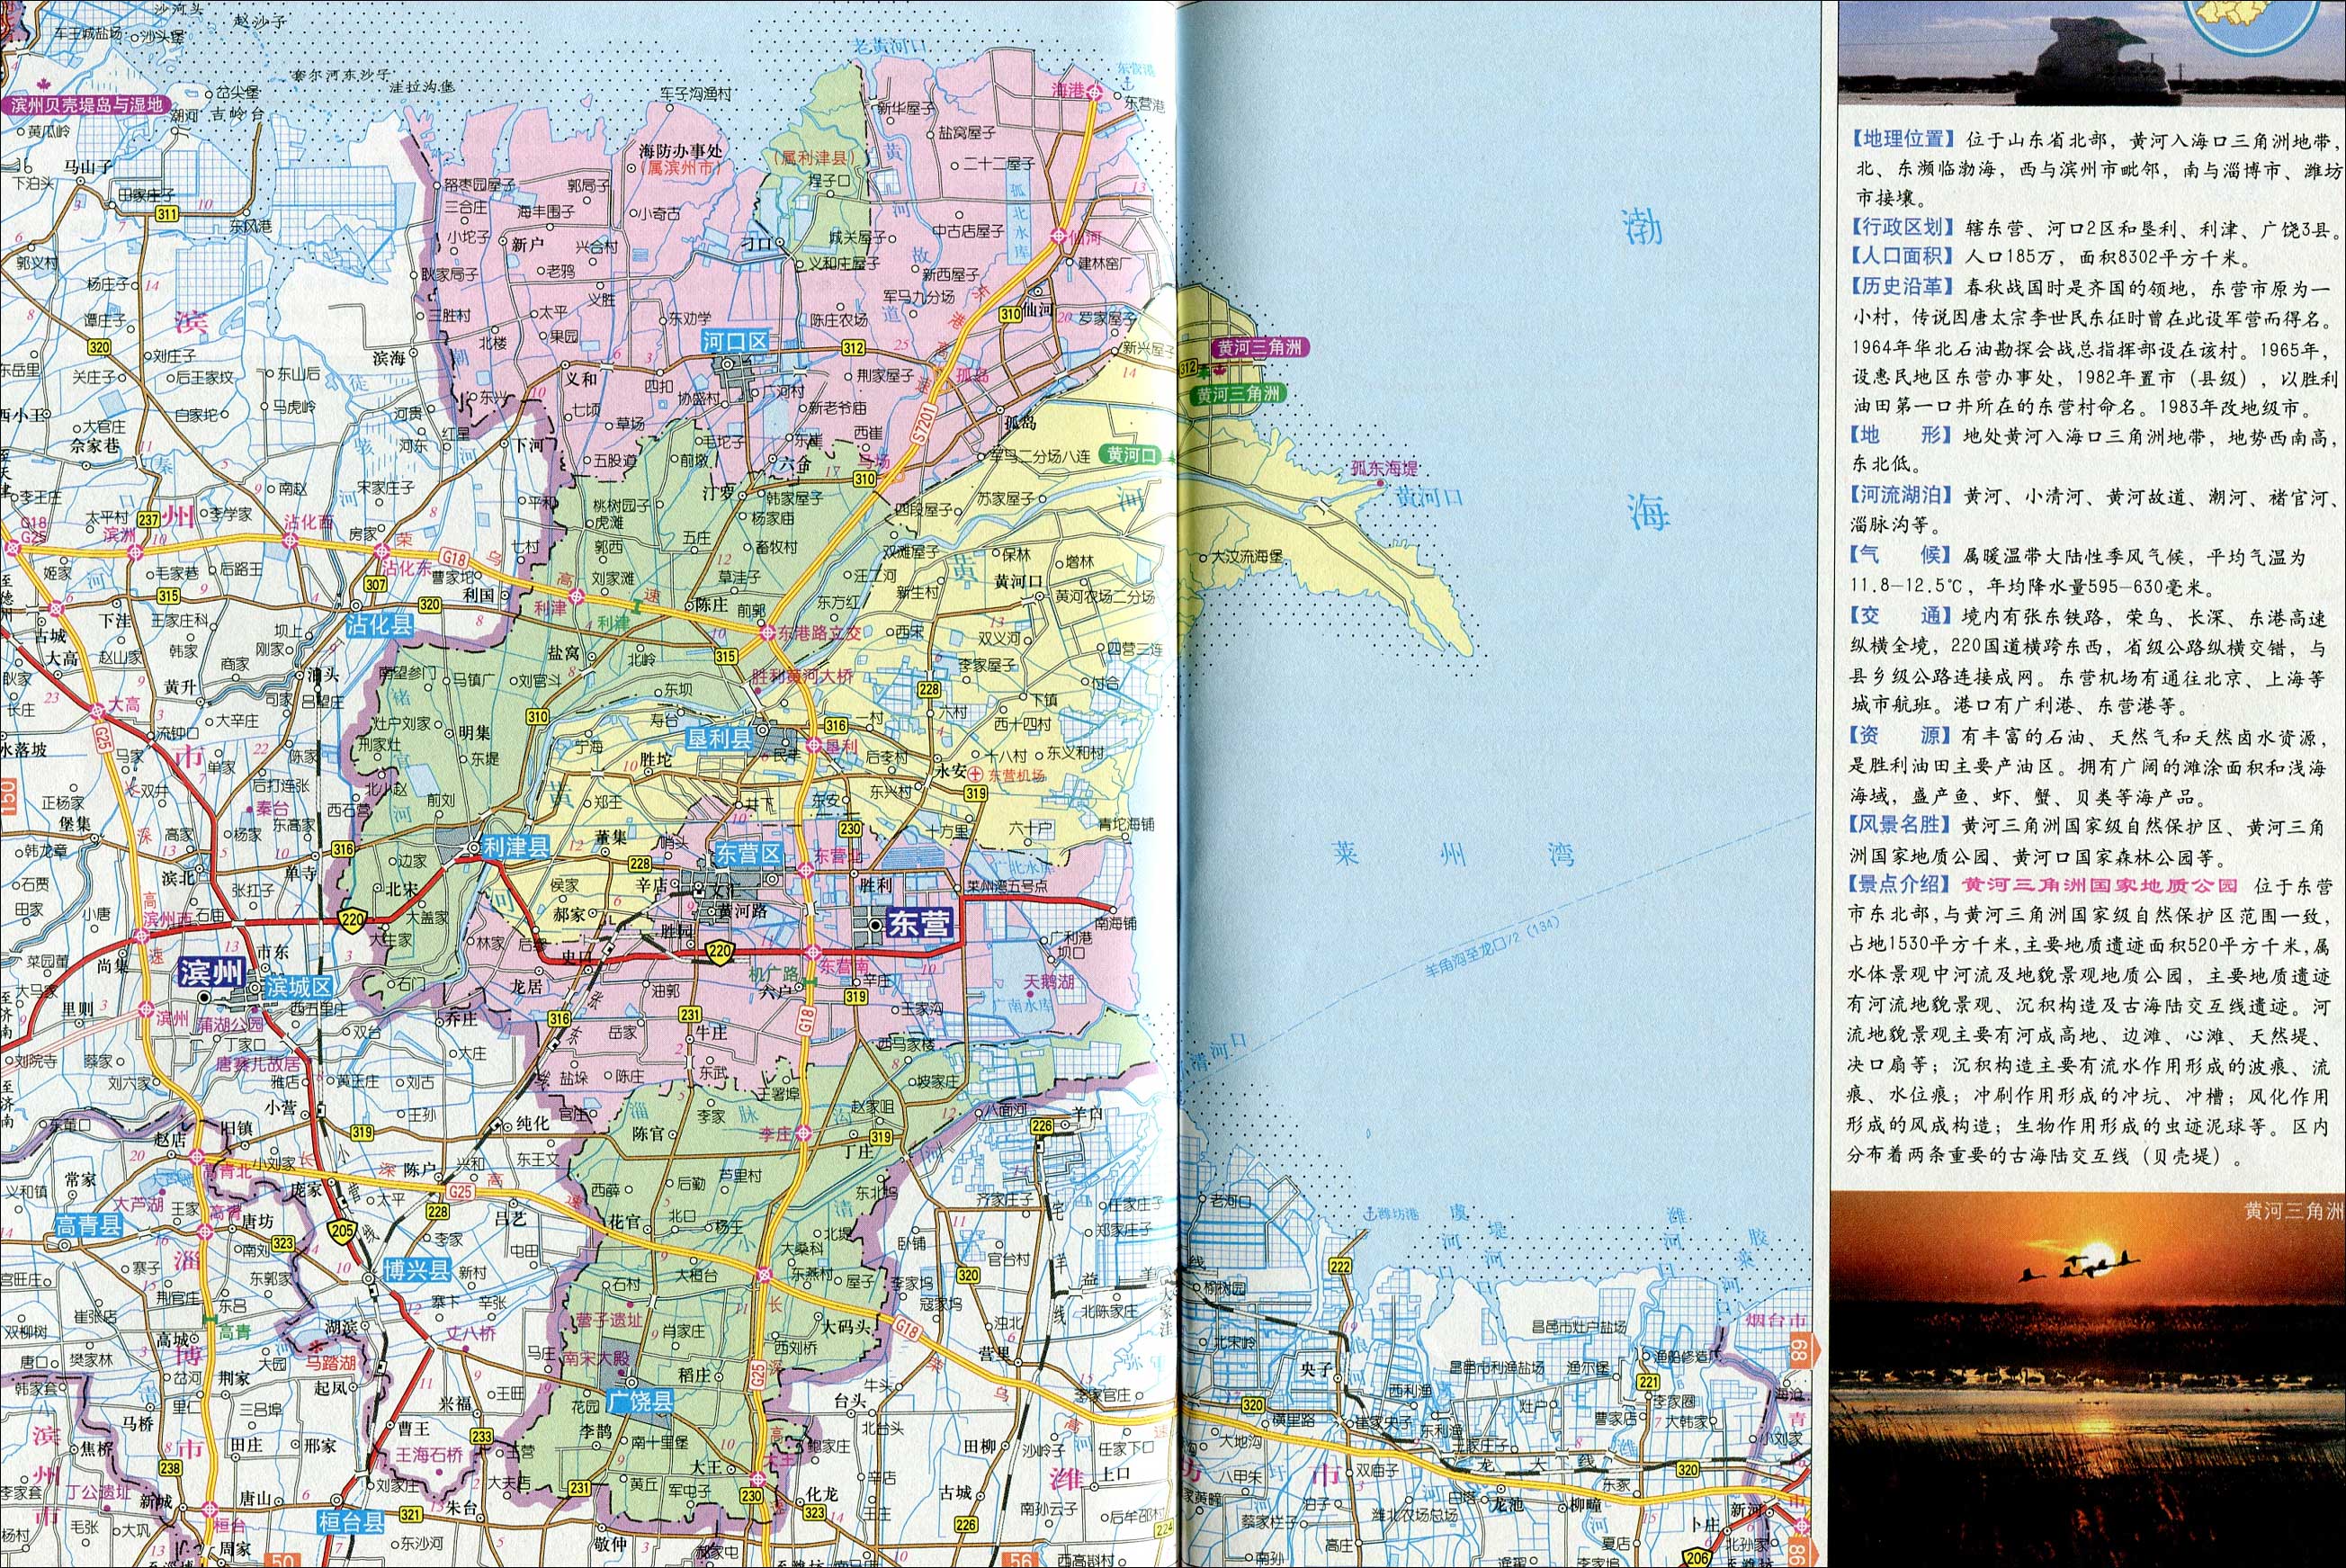 东营市河口区地图|东营市河口区地图全图高清版大图片|旅途风景图片网|www.visacits.com